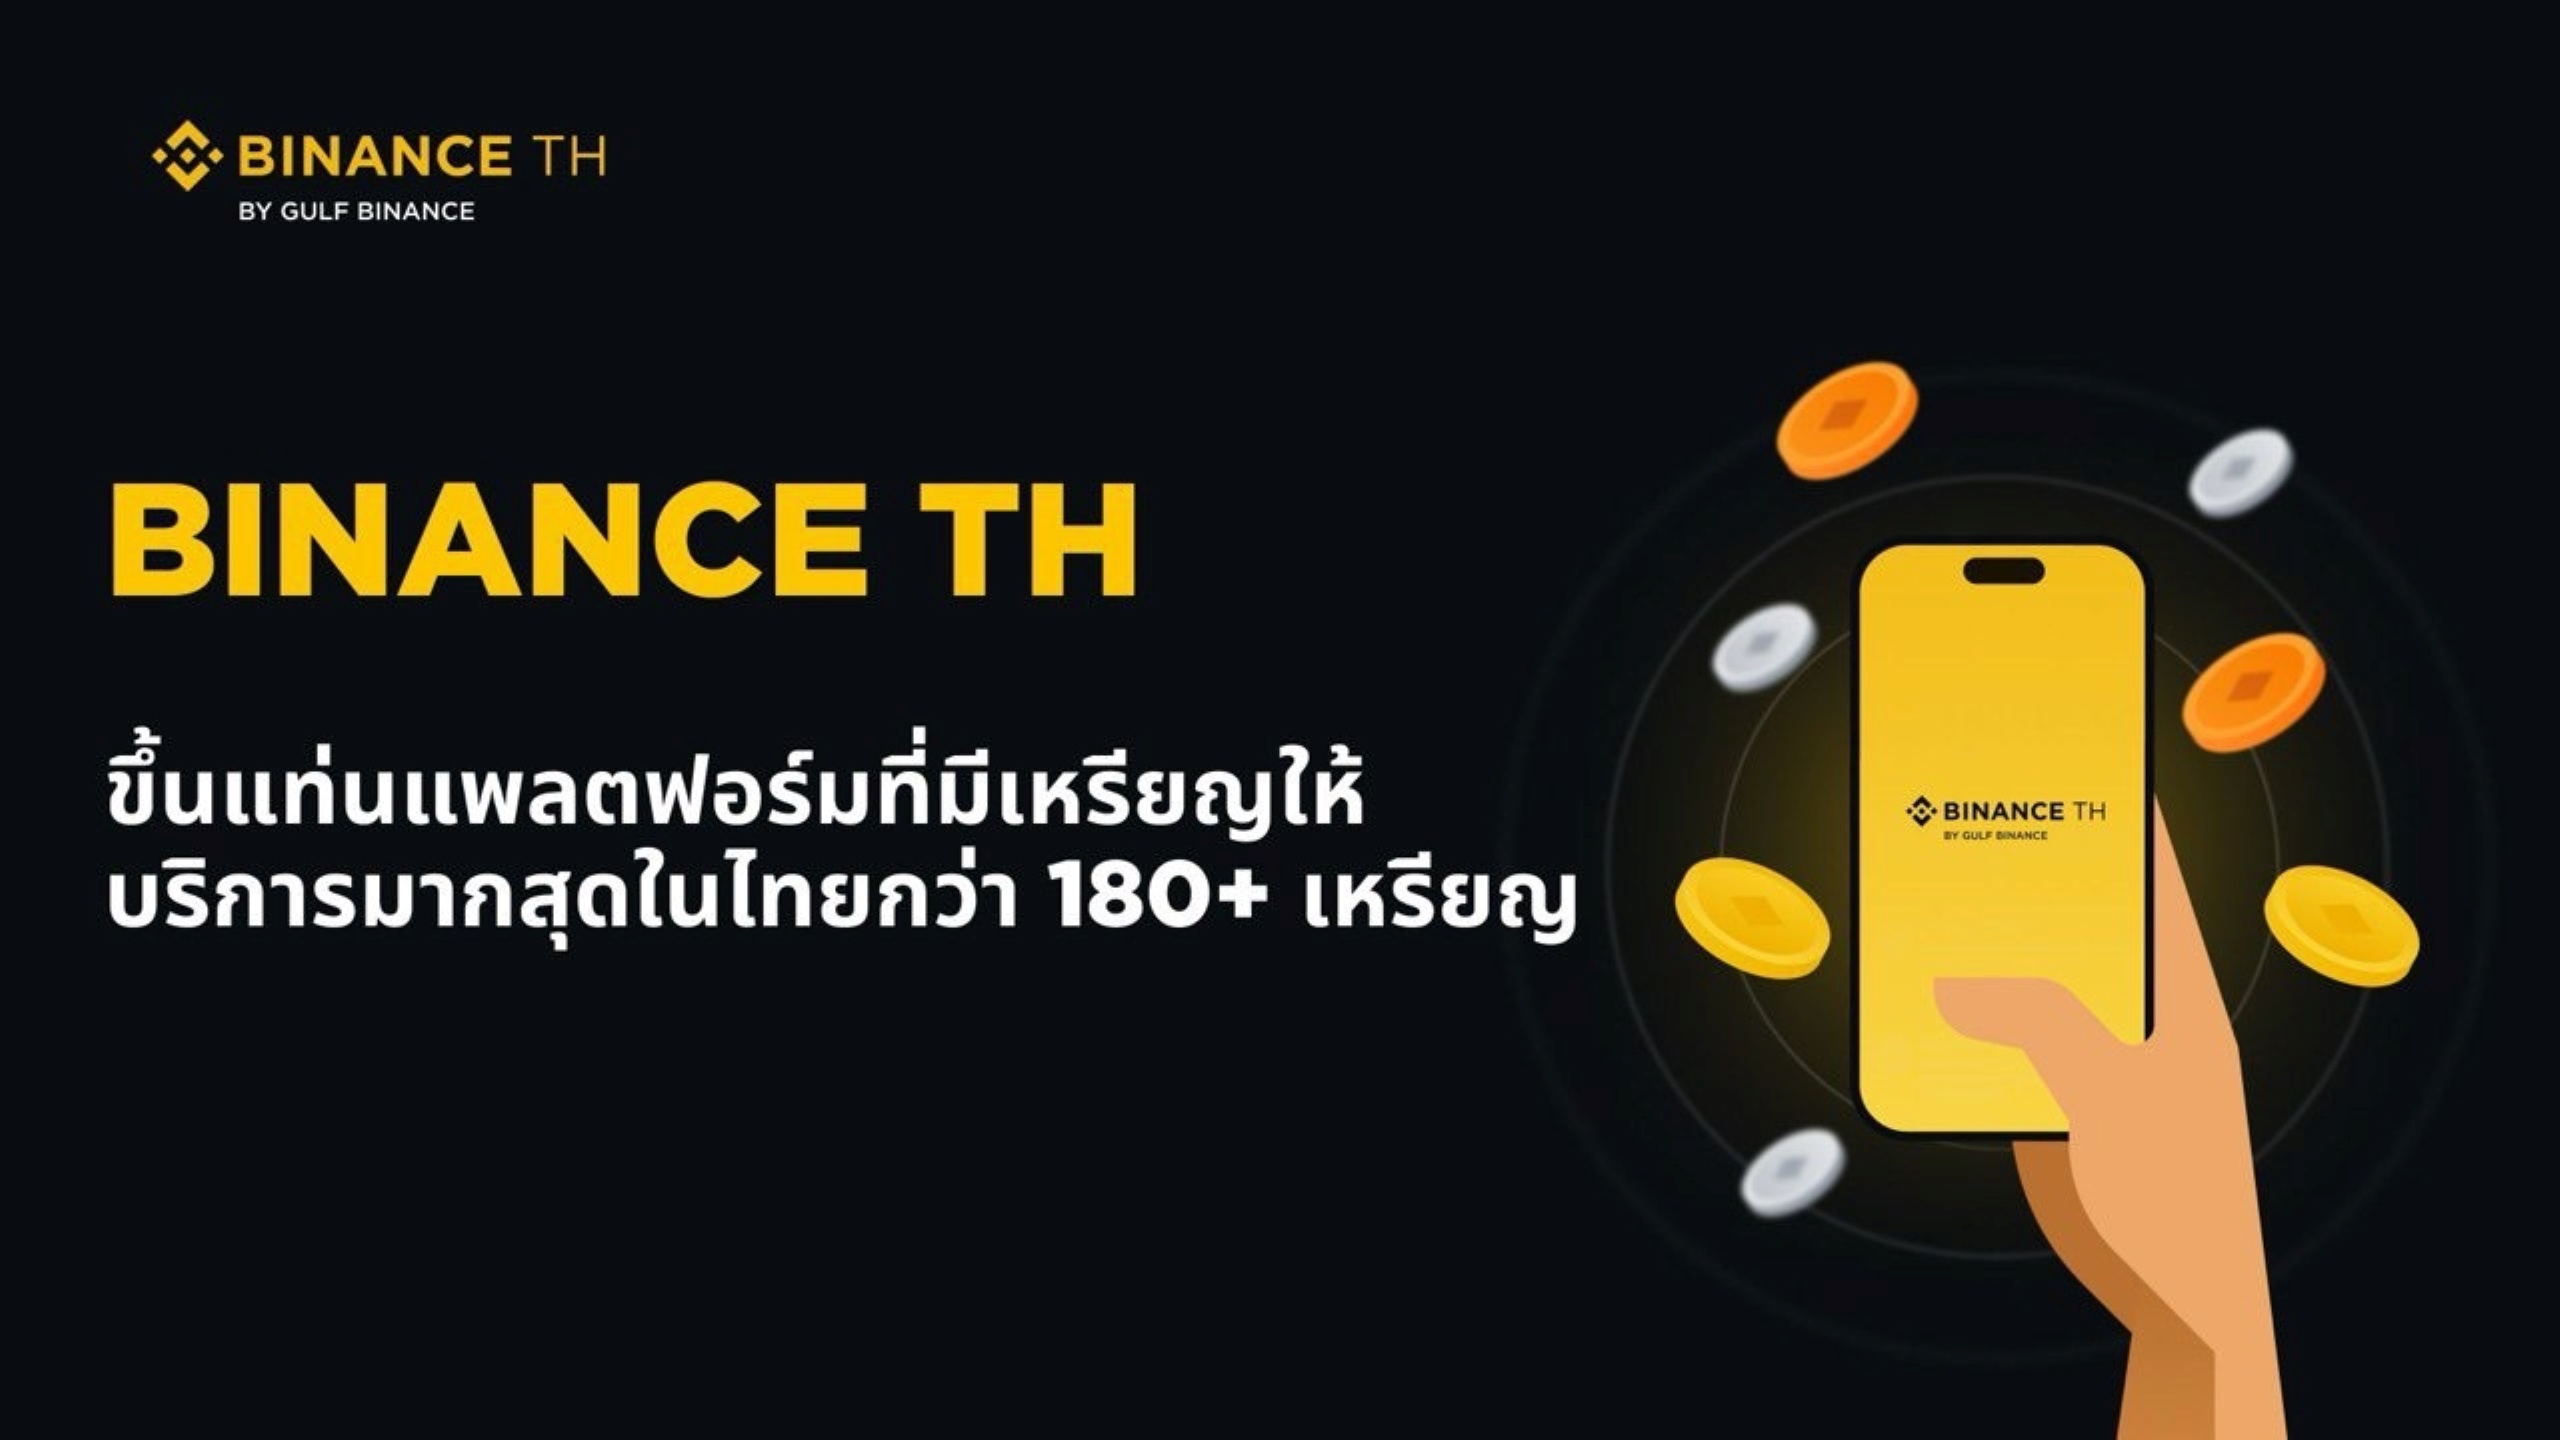 Binance TH ประกาศลิสต์เหรียญใหม่ ขึ้นแท่นแพลตฟอร์มที่มีเหรียญให้บริการมากสุดในไทยกว่า 180 เหรียญ